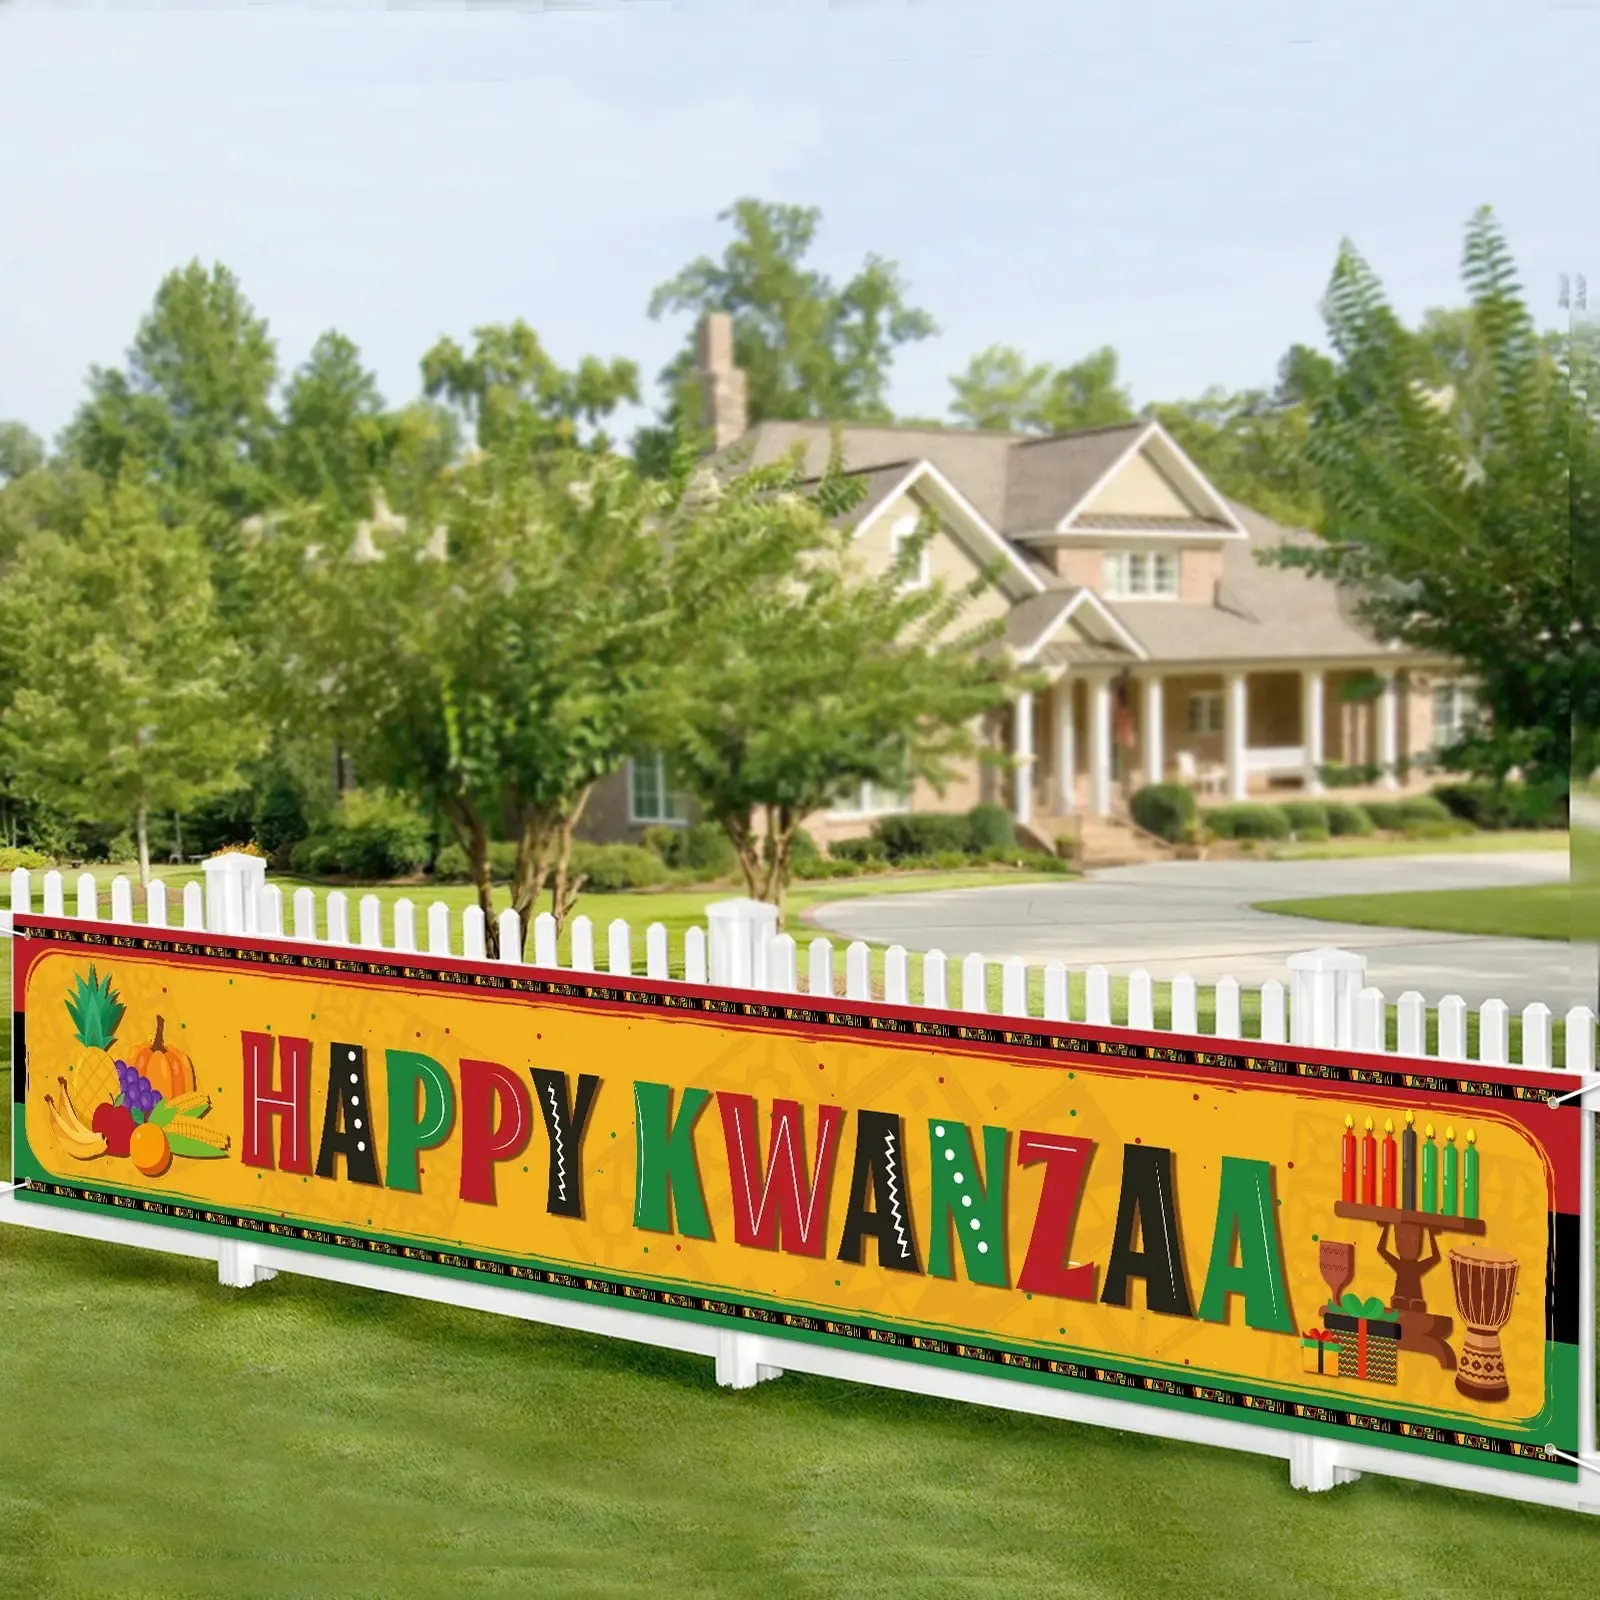 Acessórios feliz kwanzaa banner patrimônio africano decoração de festa de férias alegre interior ao ar livre decoração kwanzaa sinal de boas-vindas fontes de festa